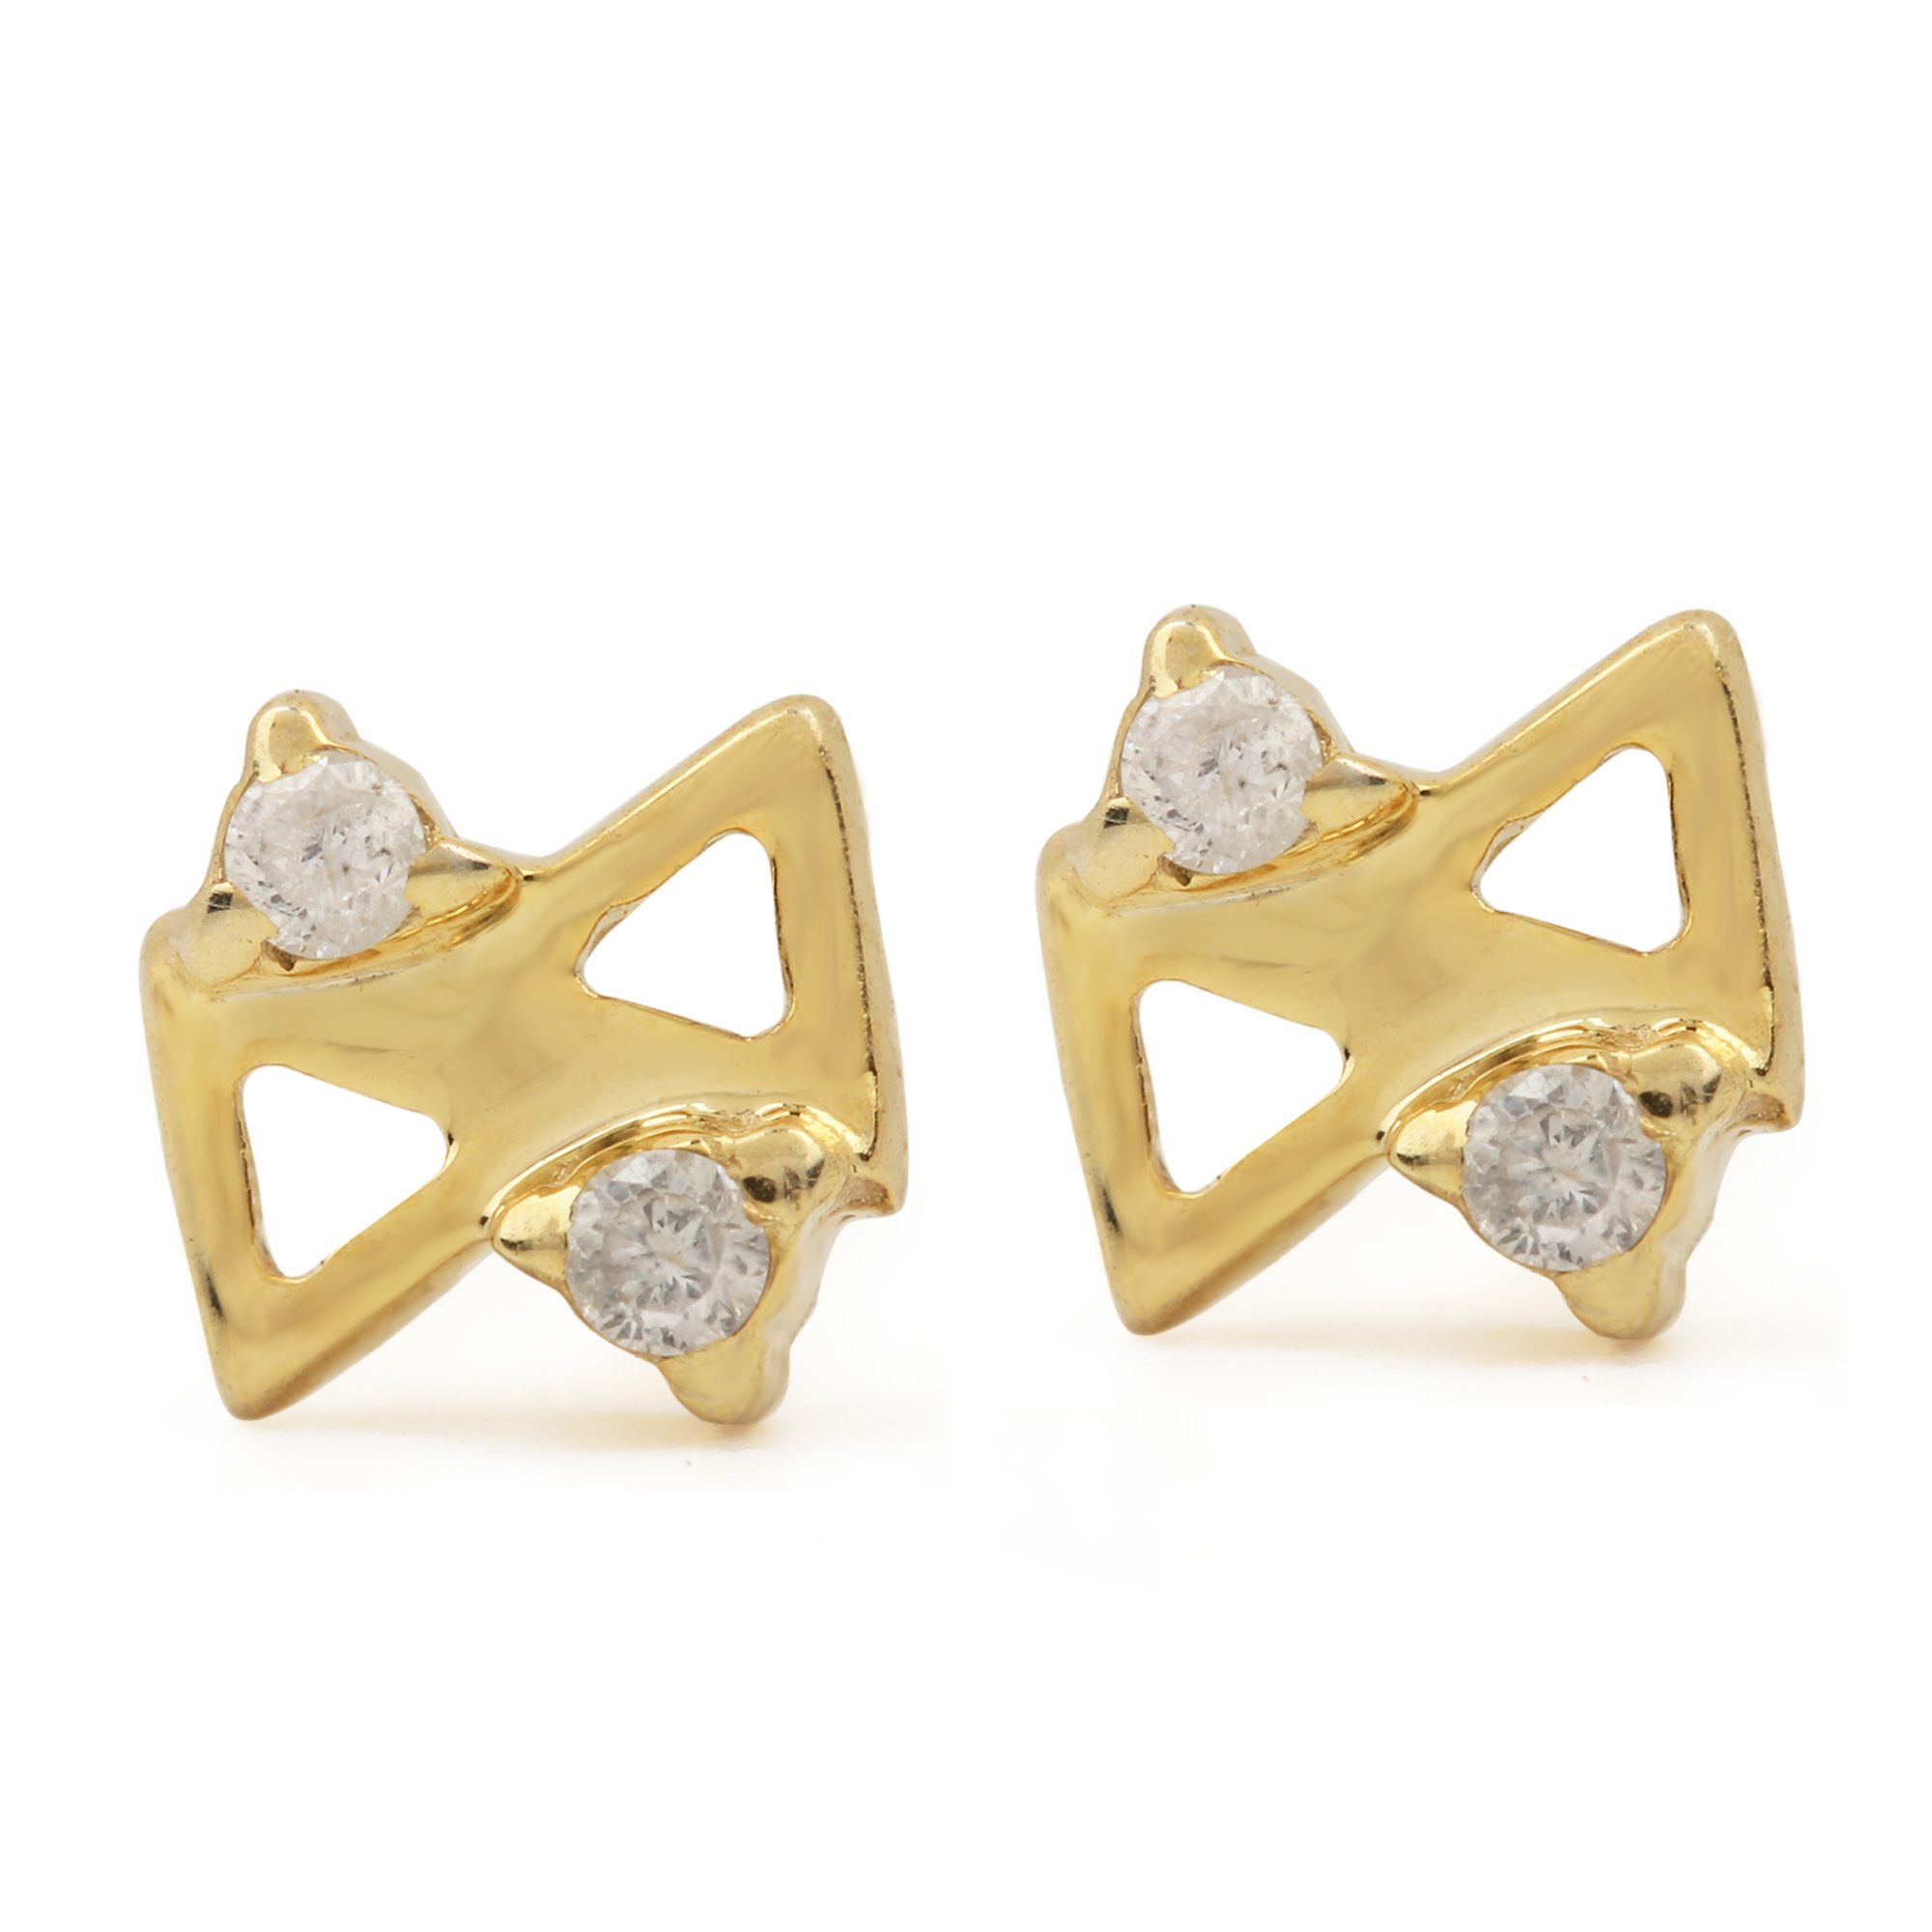 Solid 14k Gold Genuine Diamond Minimalist Stud Earrings